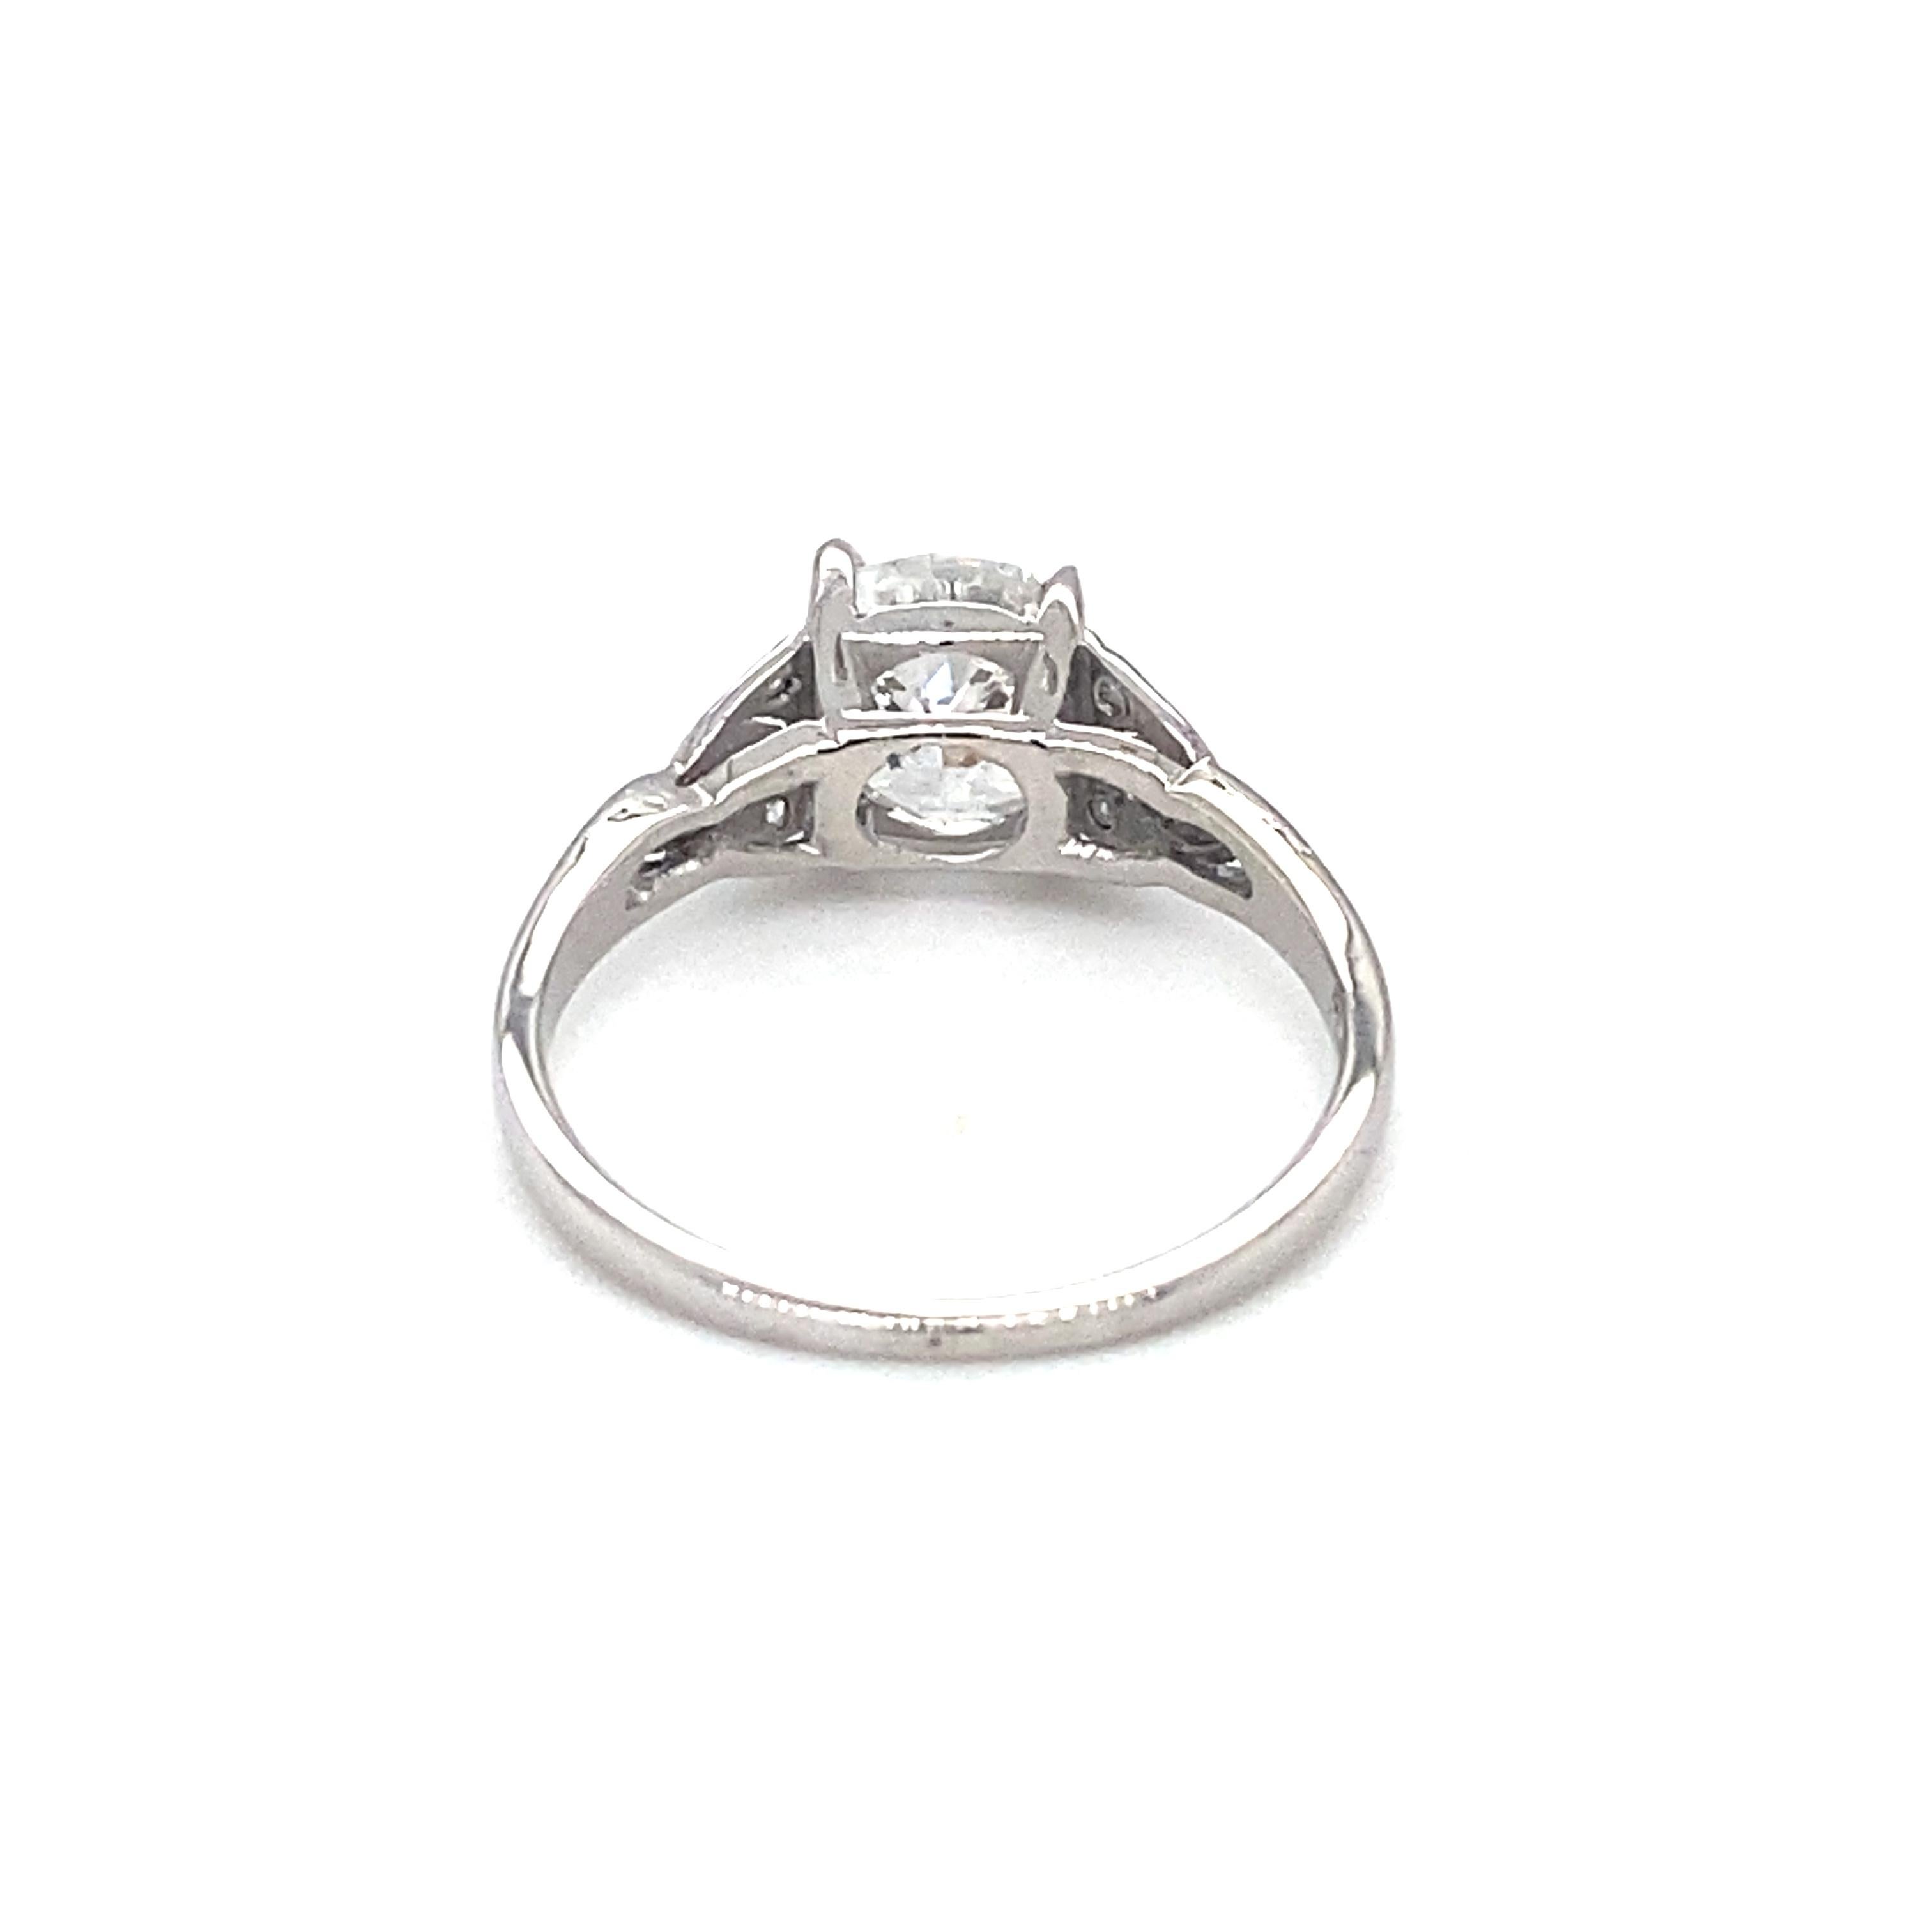 Women's or Men's Circa 1920s Art Deco 1.0 Carat Tota Diamond Engagement Ring in Platinum